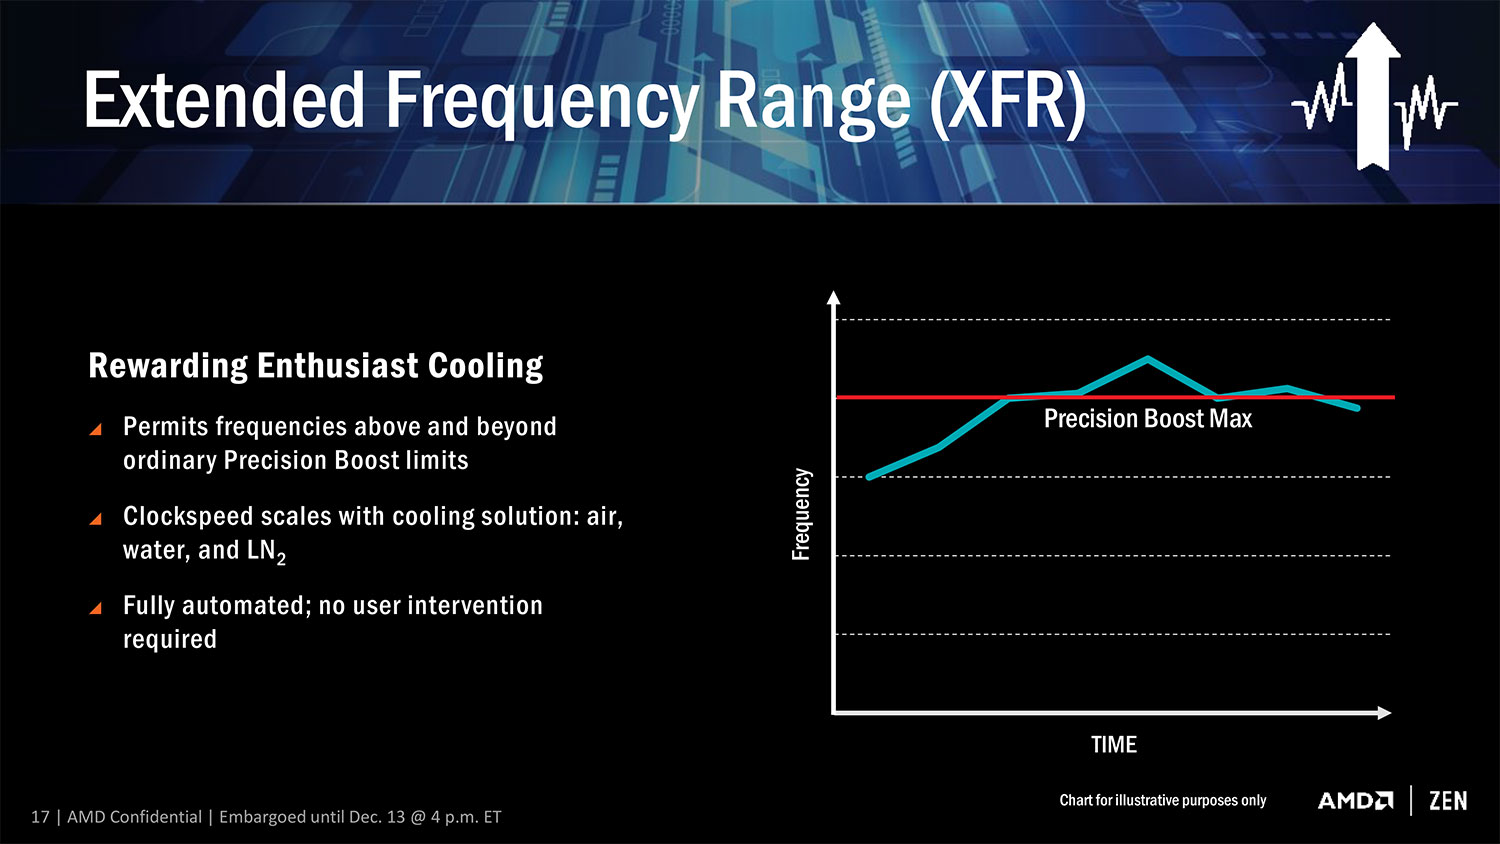 AMD'nin Ryzen işlemcisi için yeni test sonuçları ortaya çıktı